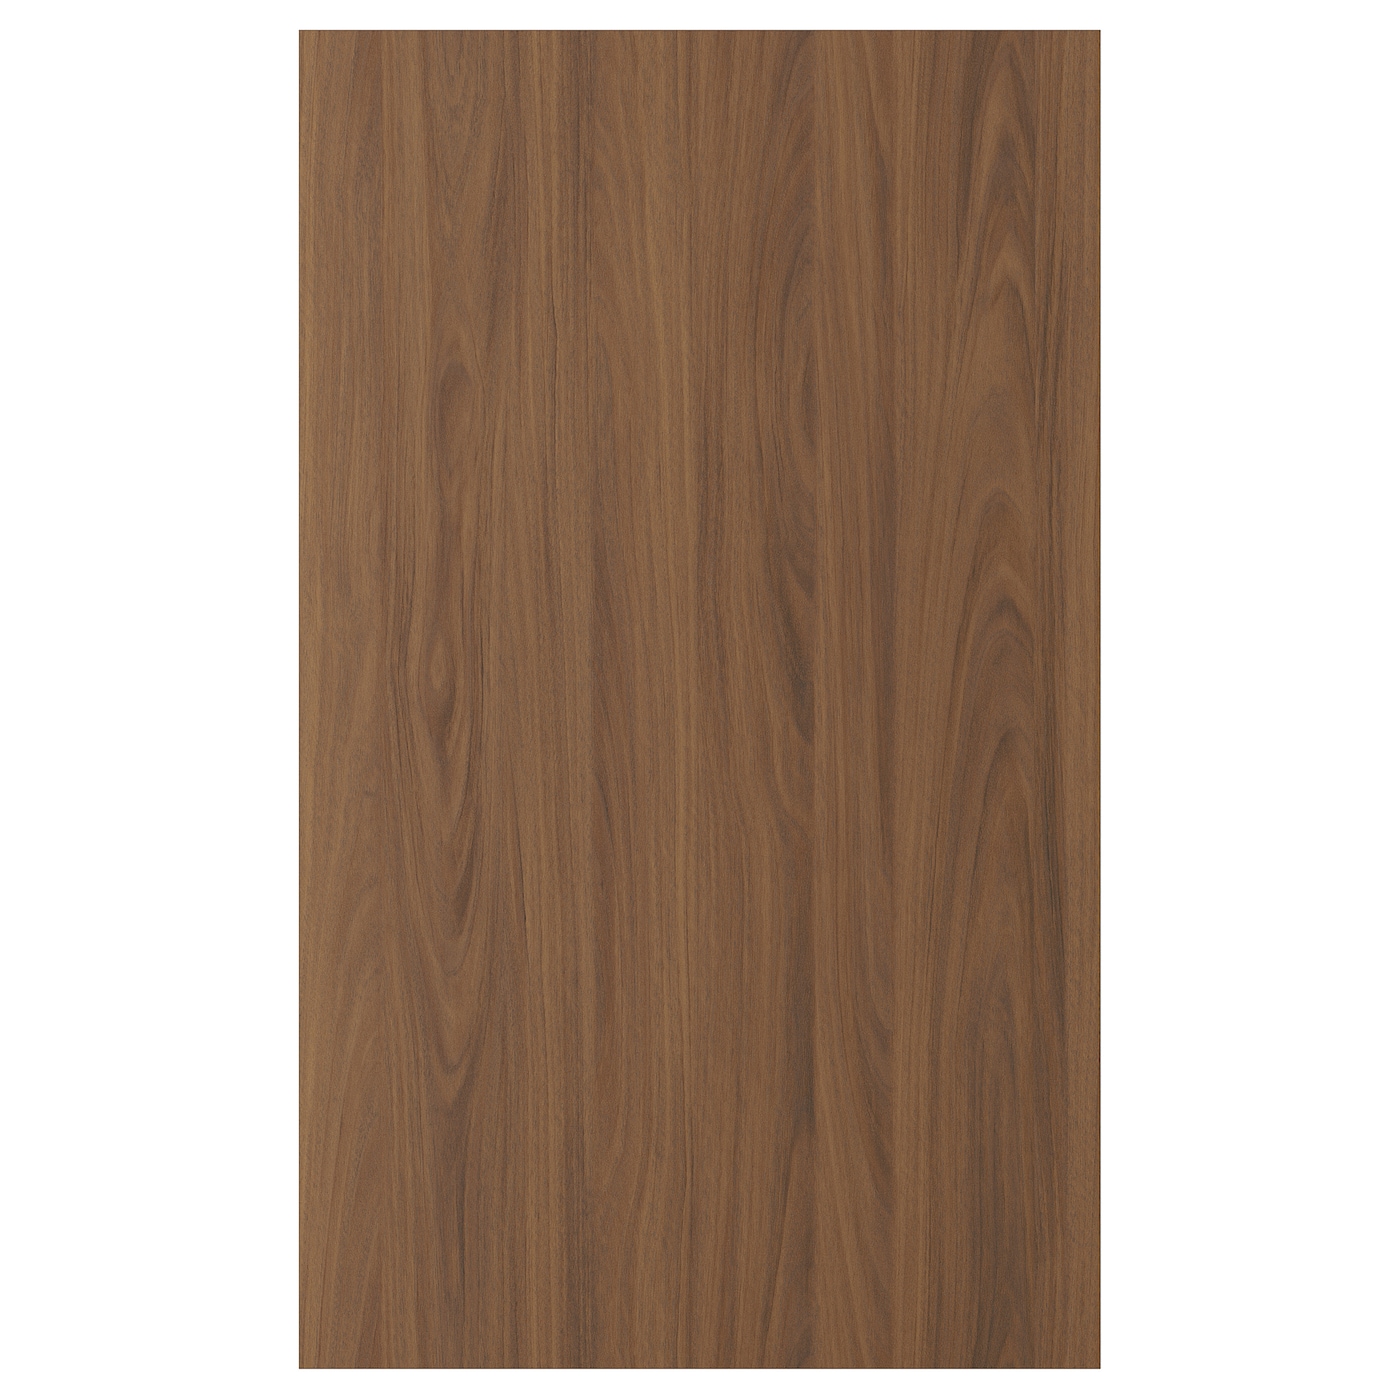 Дверца  - TISTORP IKEA/ ТИСТОРП ИКЕА,  60х100 см, коричневый орех